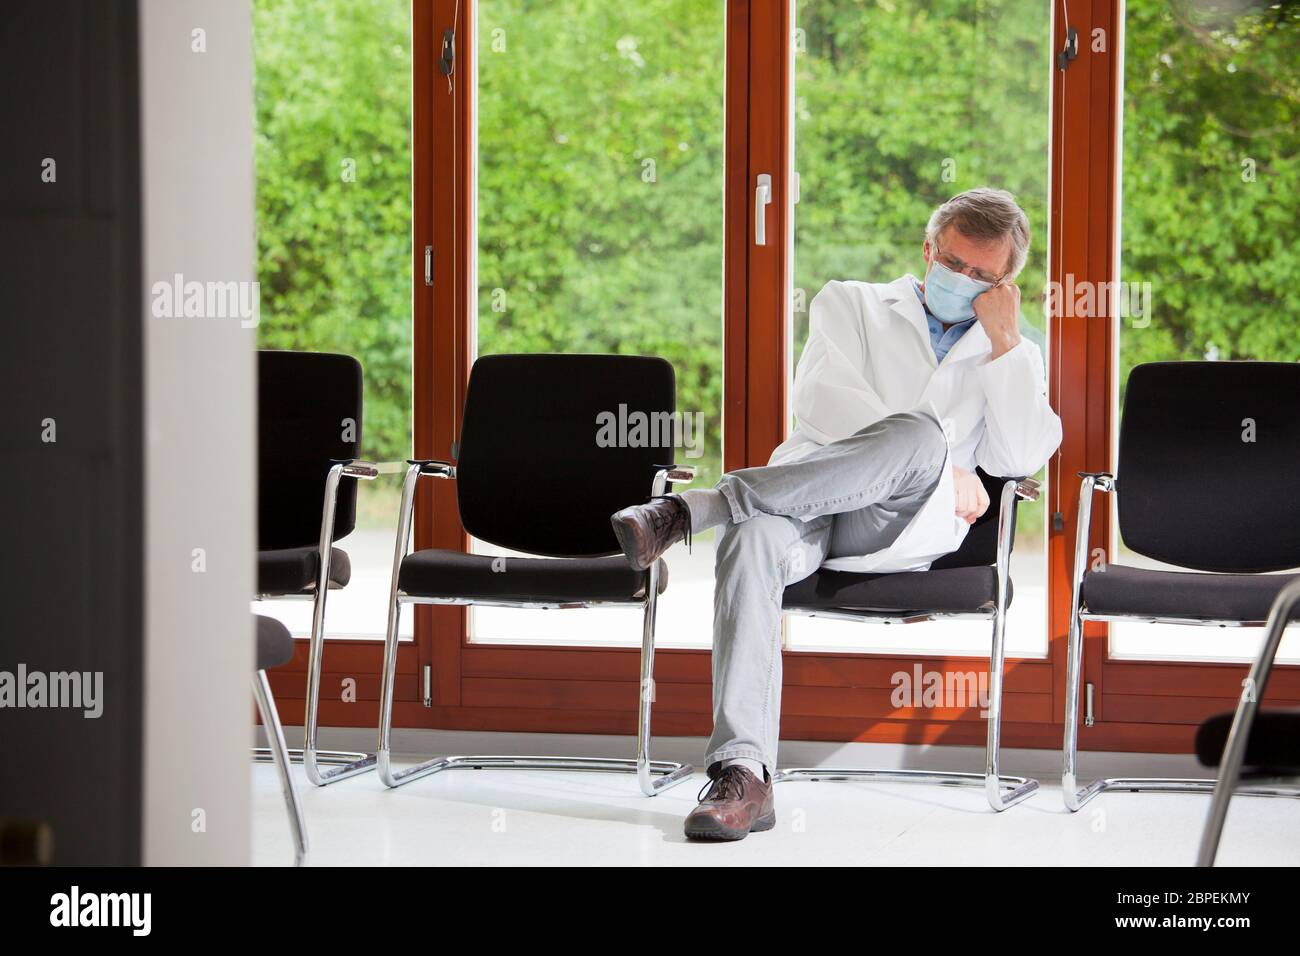 Médecin surtravaillé avec masque facial dormant dans une chaise dans une salle d'attente vide - fond vert avec des plantes Banque D'Images